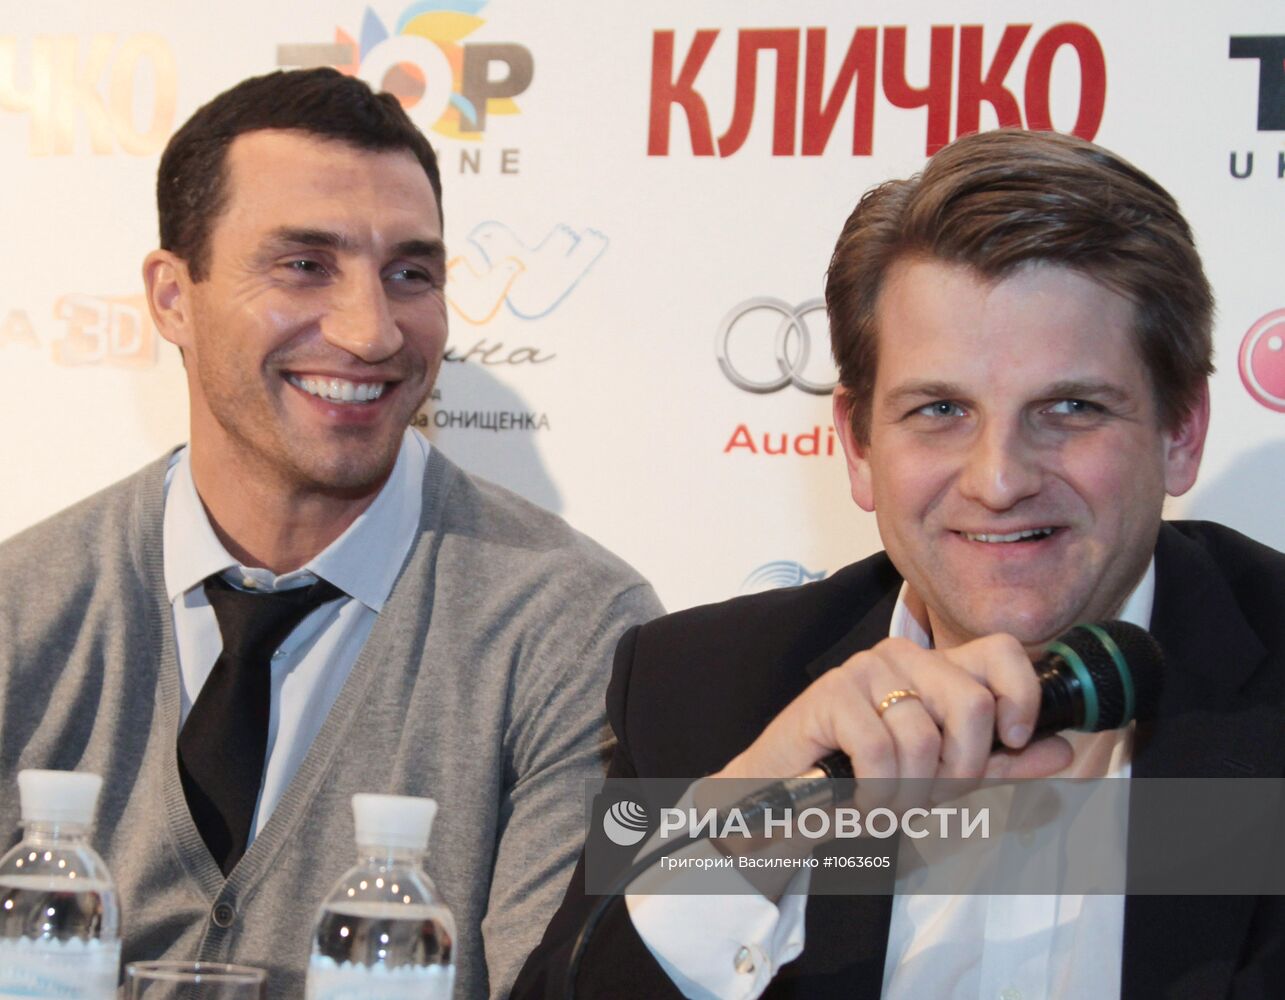 П/к, посвященная пресс-показу документального фильма "Кличко"